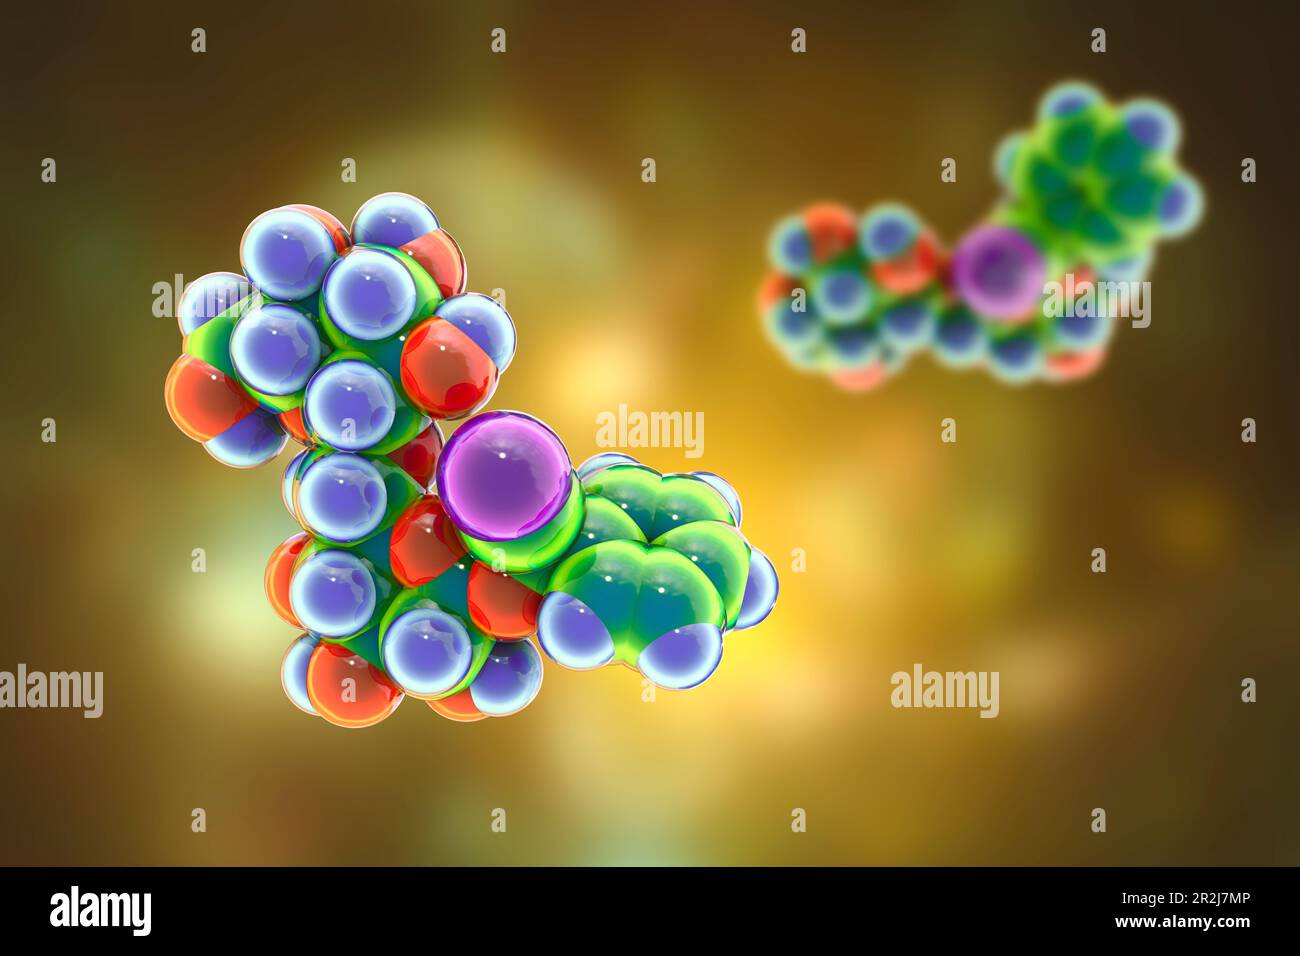 Modello molecolare di amigdalina, illustrazione Foto Stock